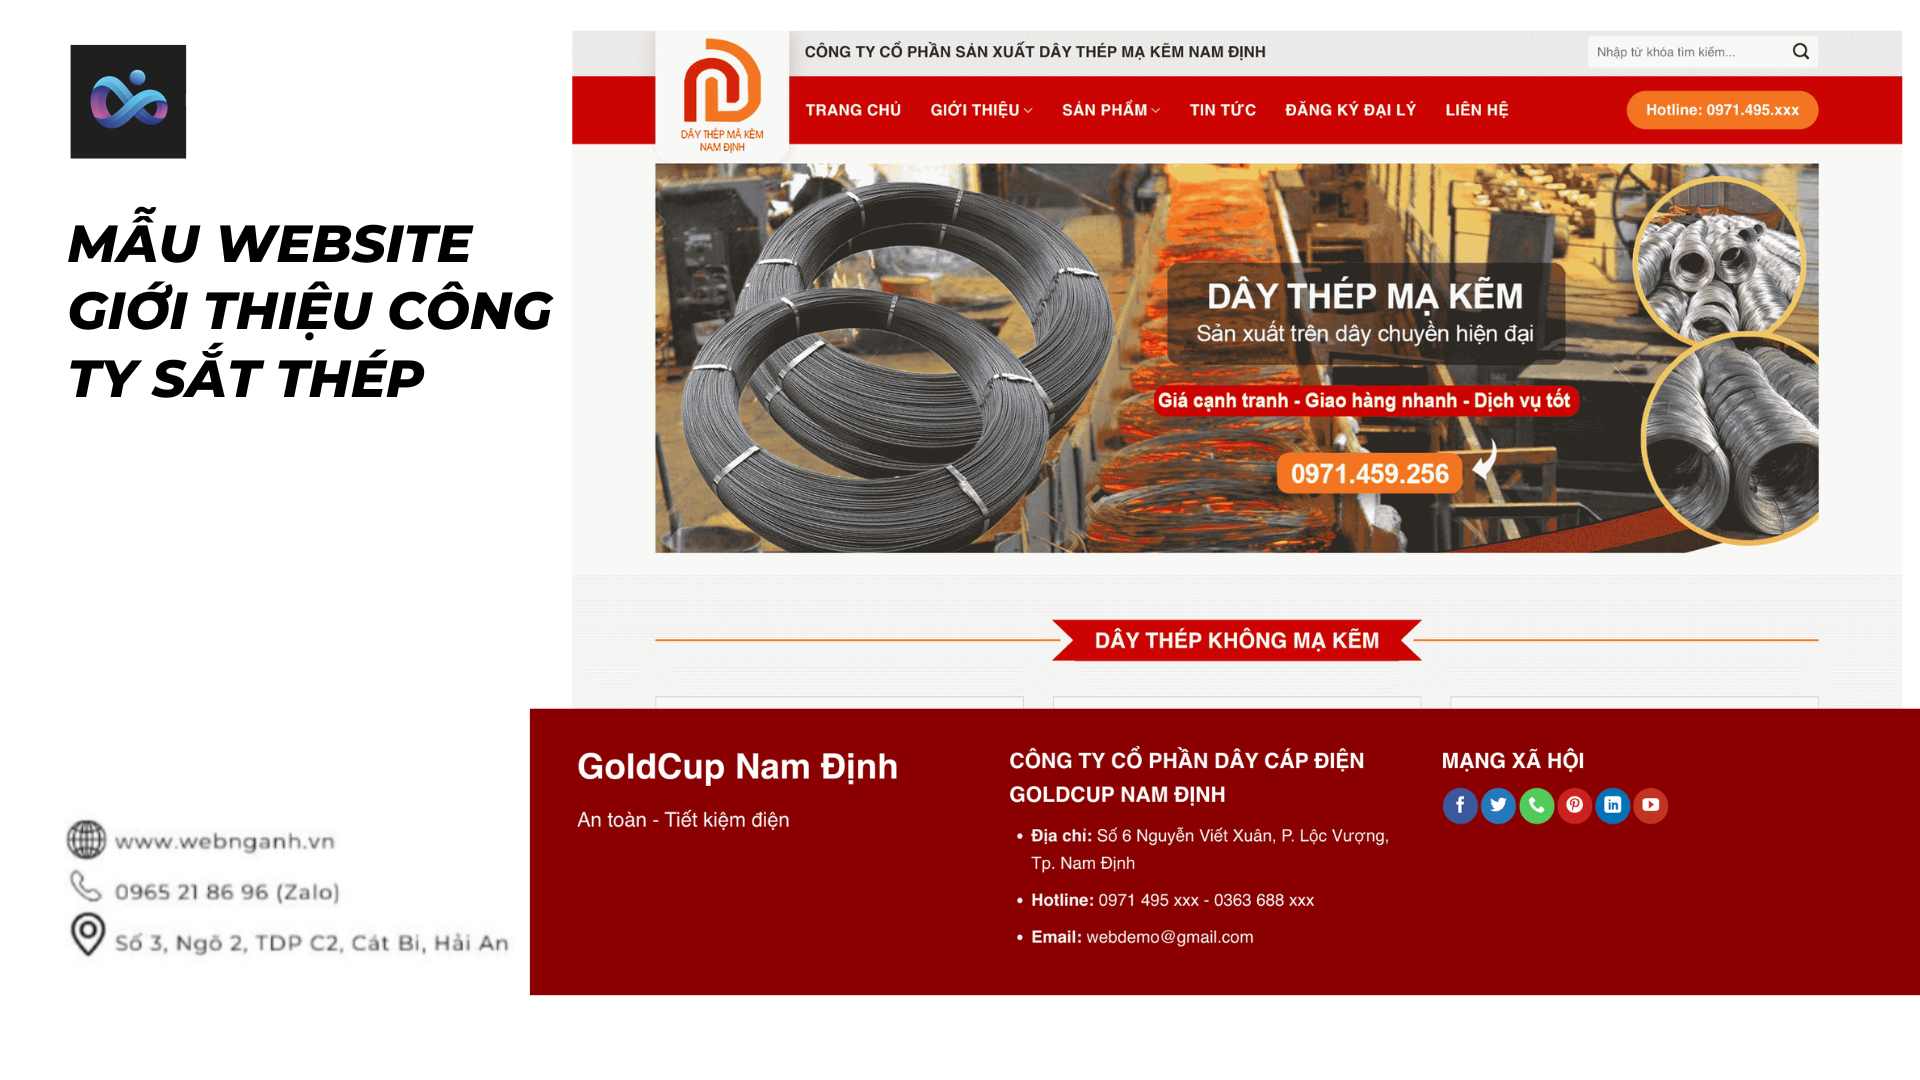 Mẫu Website giới thiệu công ty sắt thép